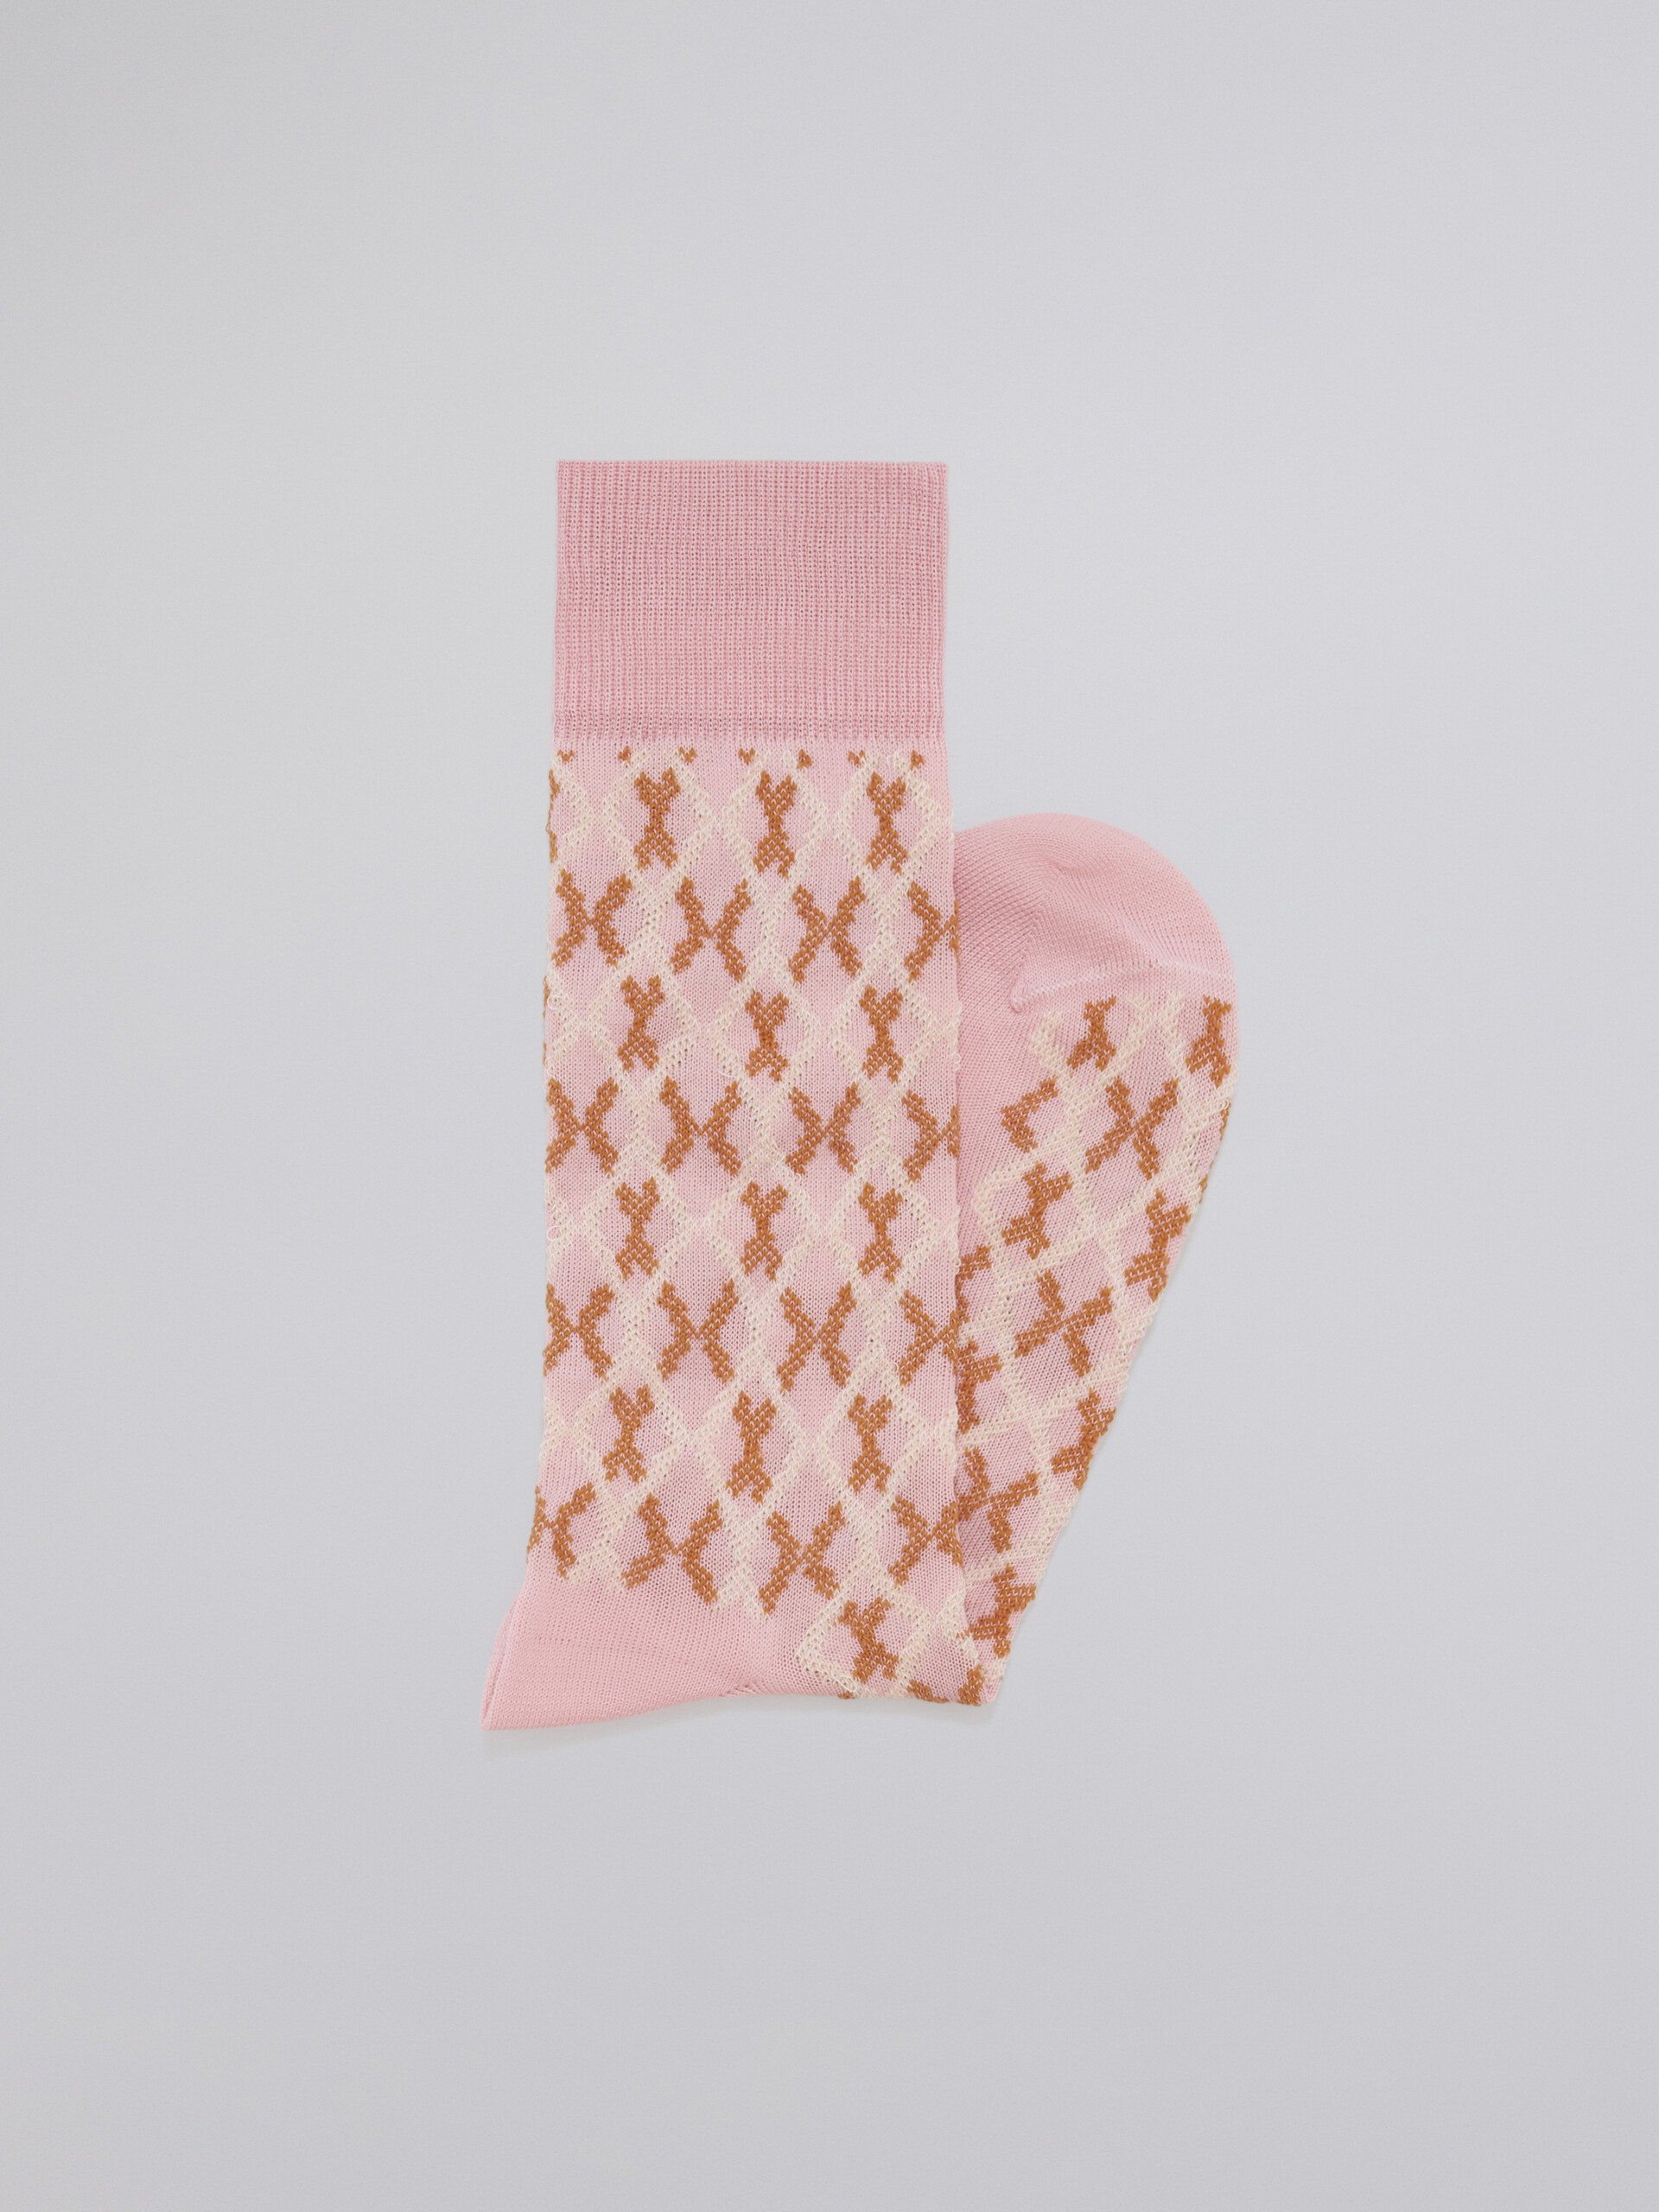 Calza in cotone jacquard e nylon disegno micro riquadro rosa - Calze - Image 2